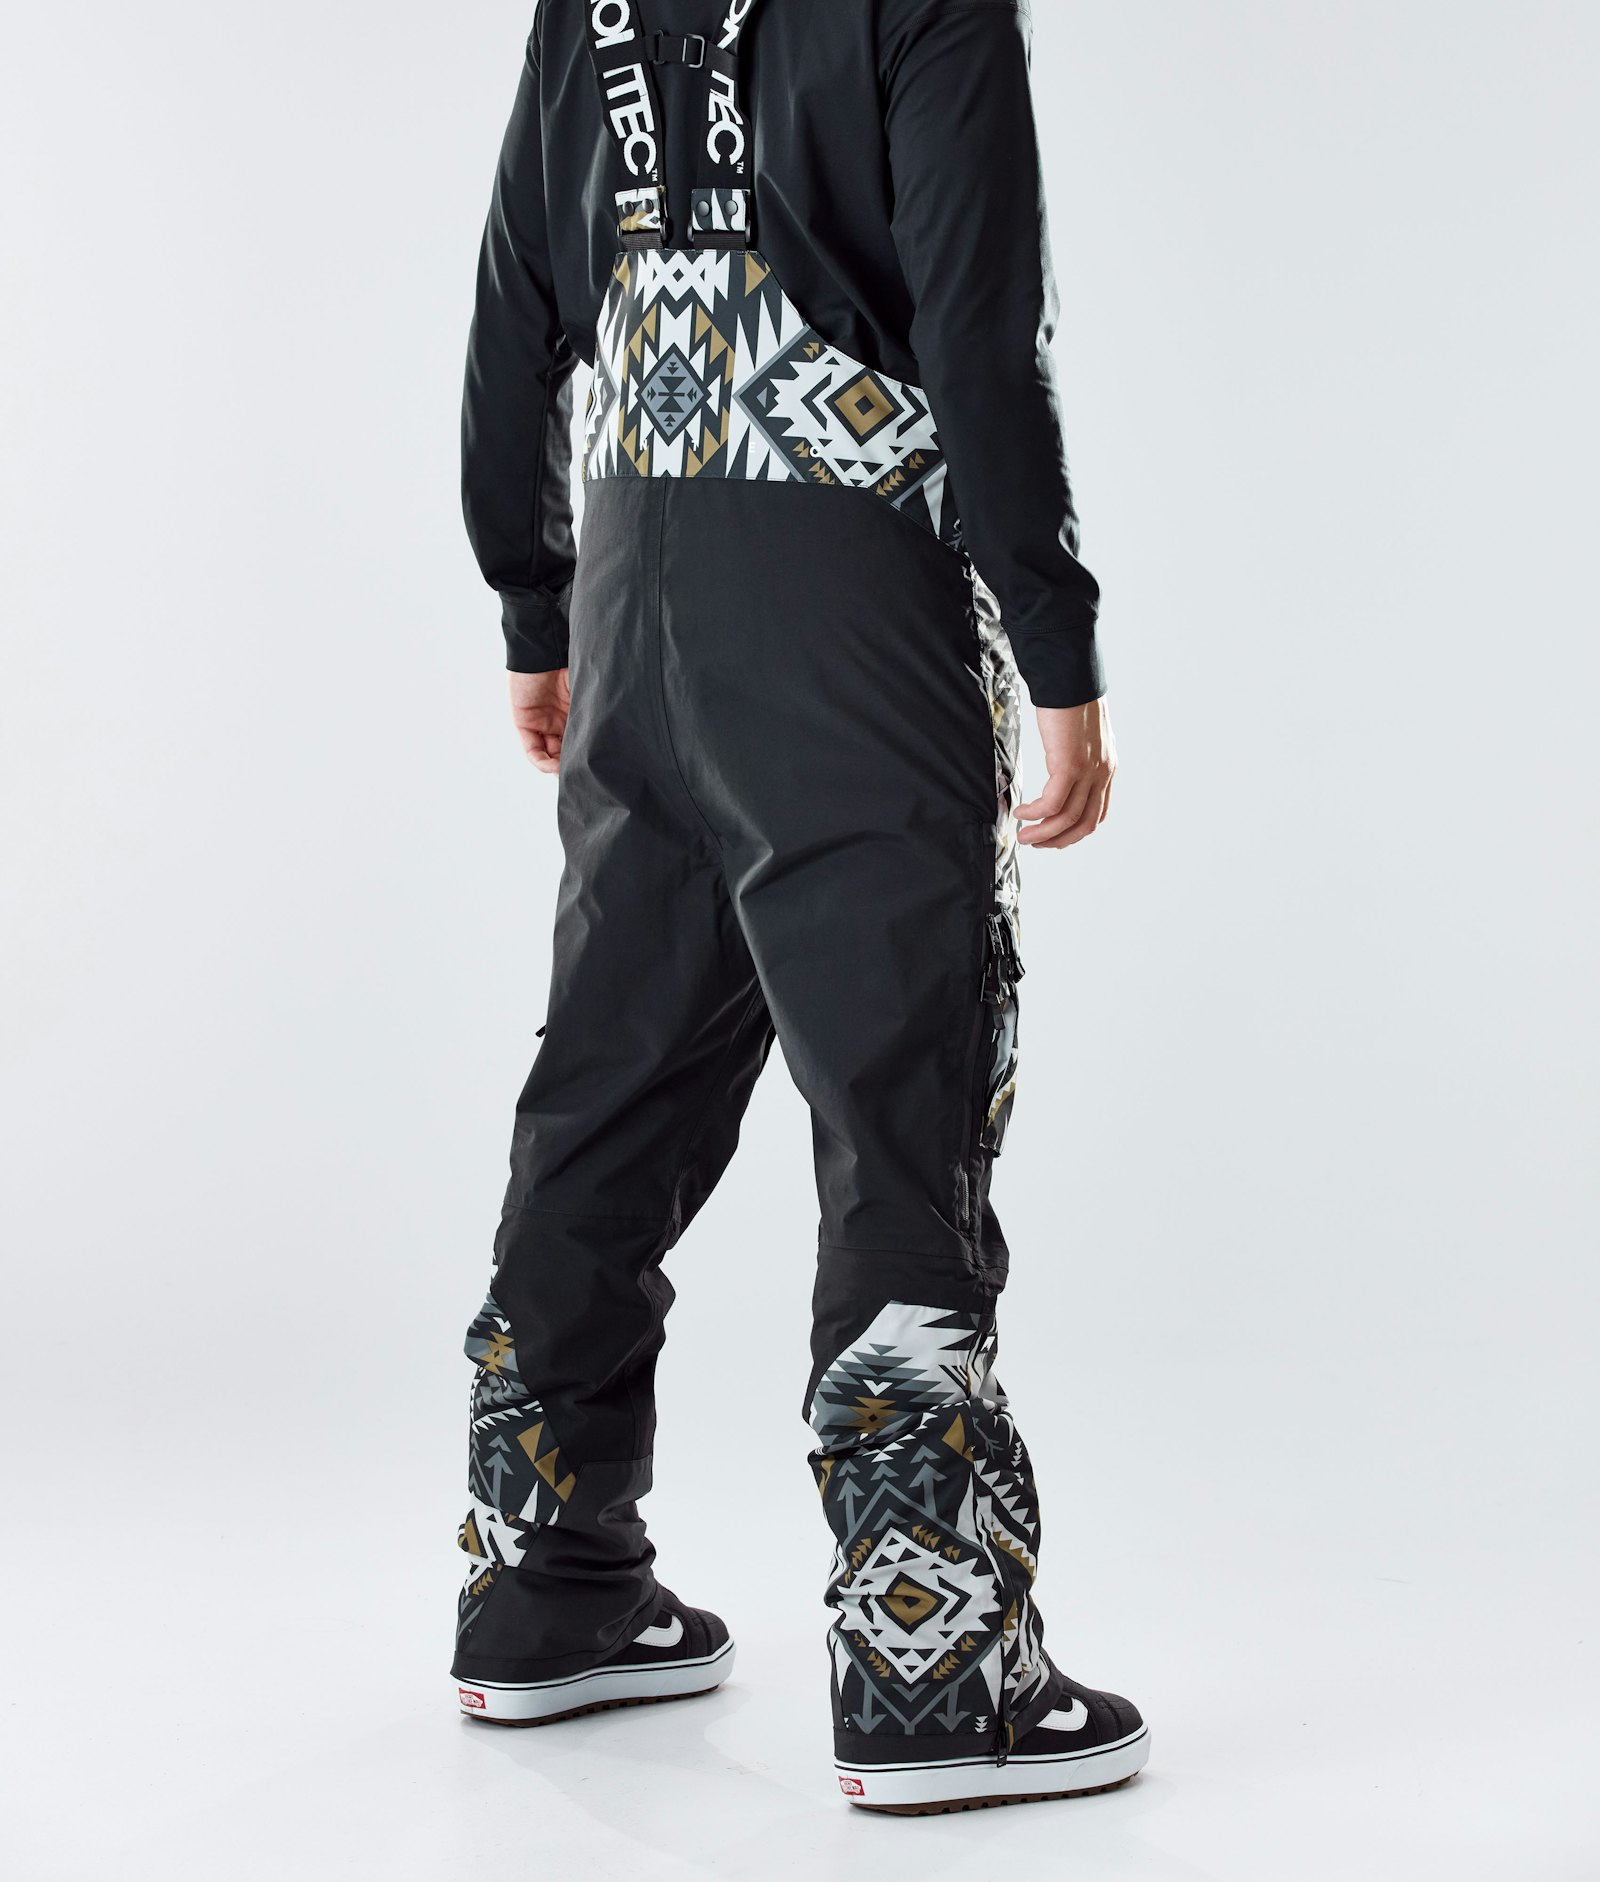 Fawk 2020 Snowboard Pants Men Komber Gold/Black Renewed